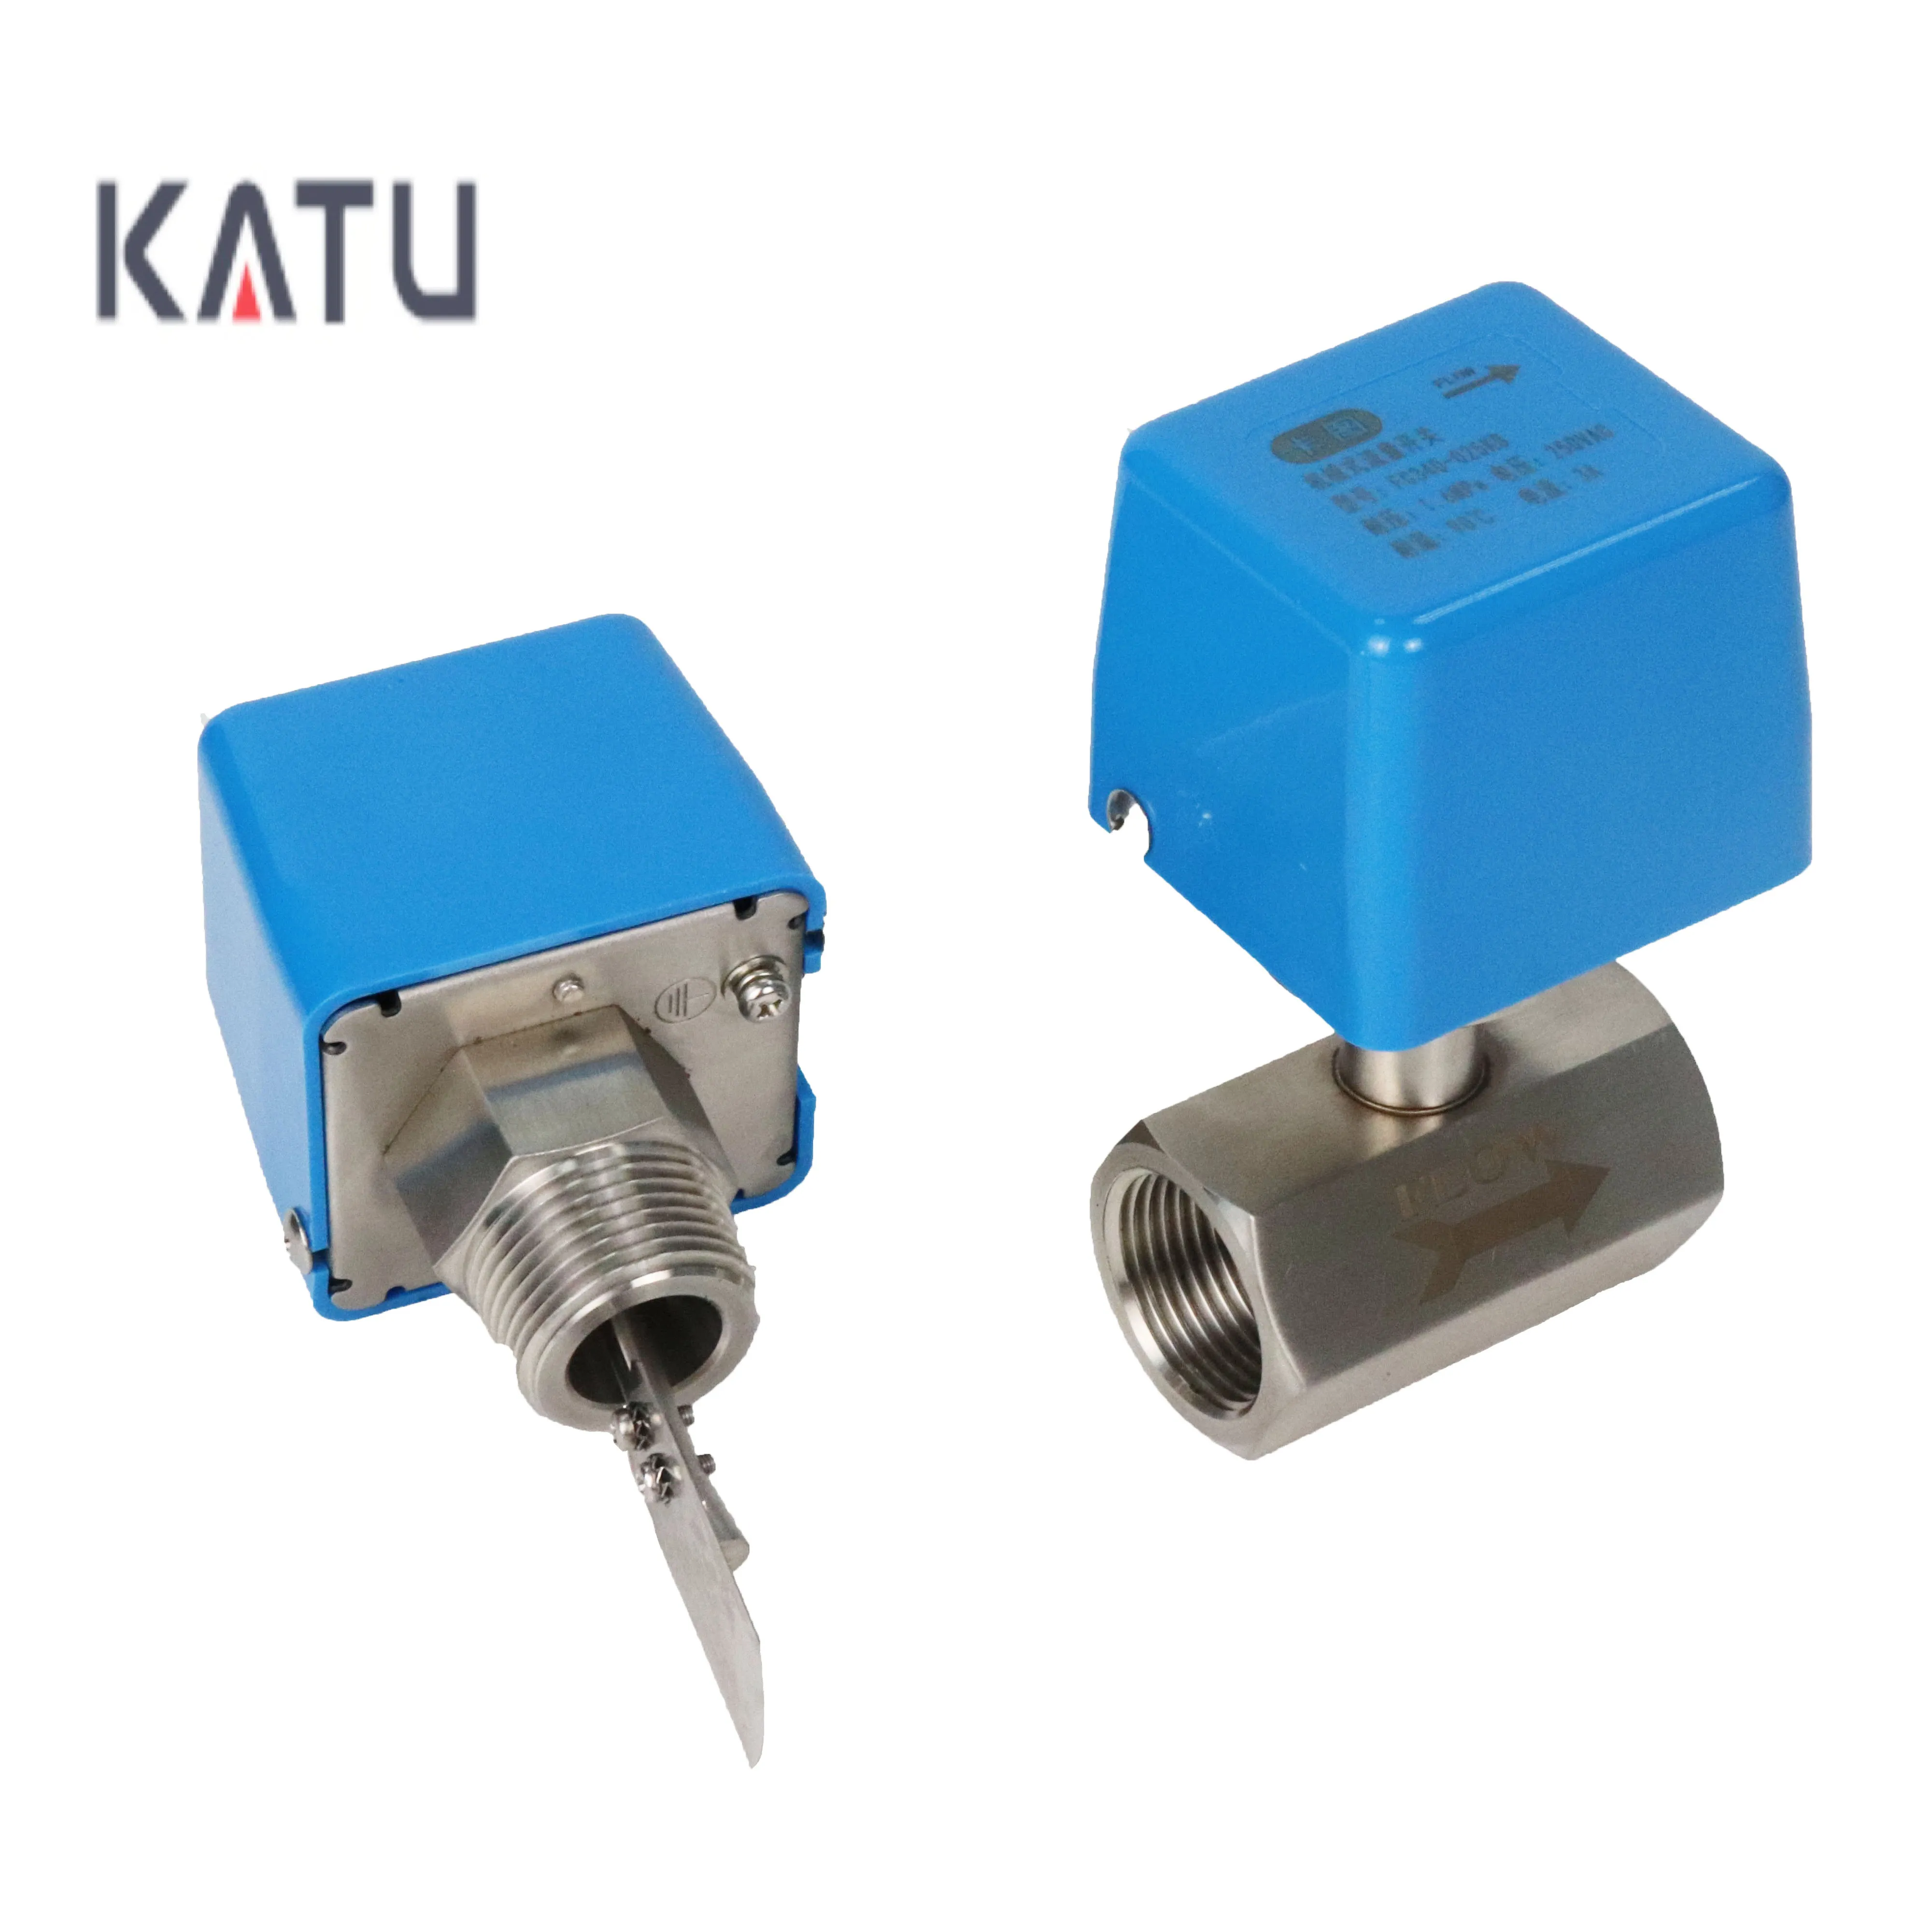 Katu FC310สวิตช์ควบคุมการไหลของอุตสาหกรรมการอัดอากาศ